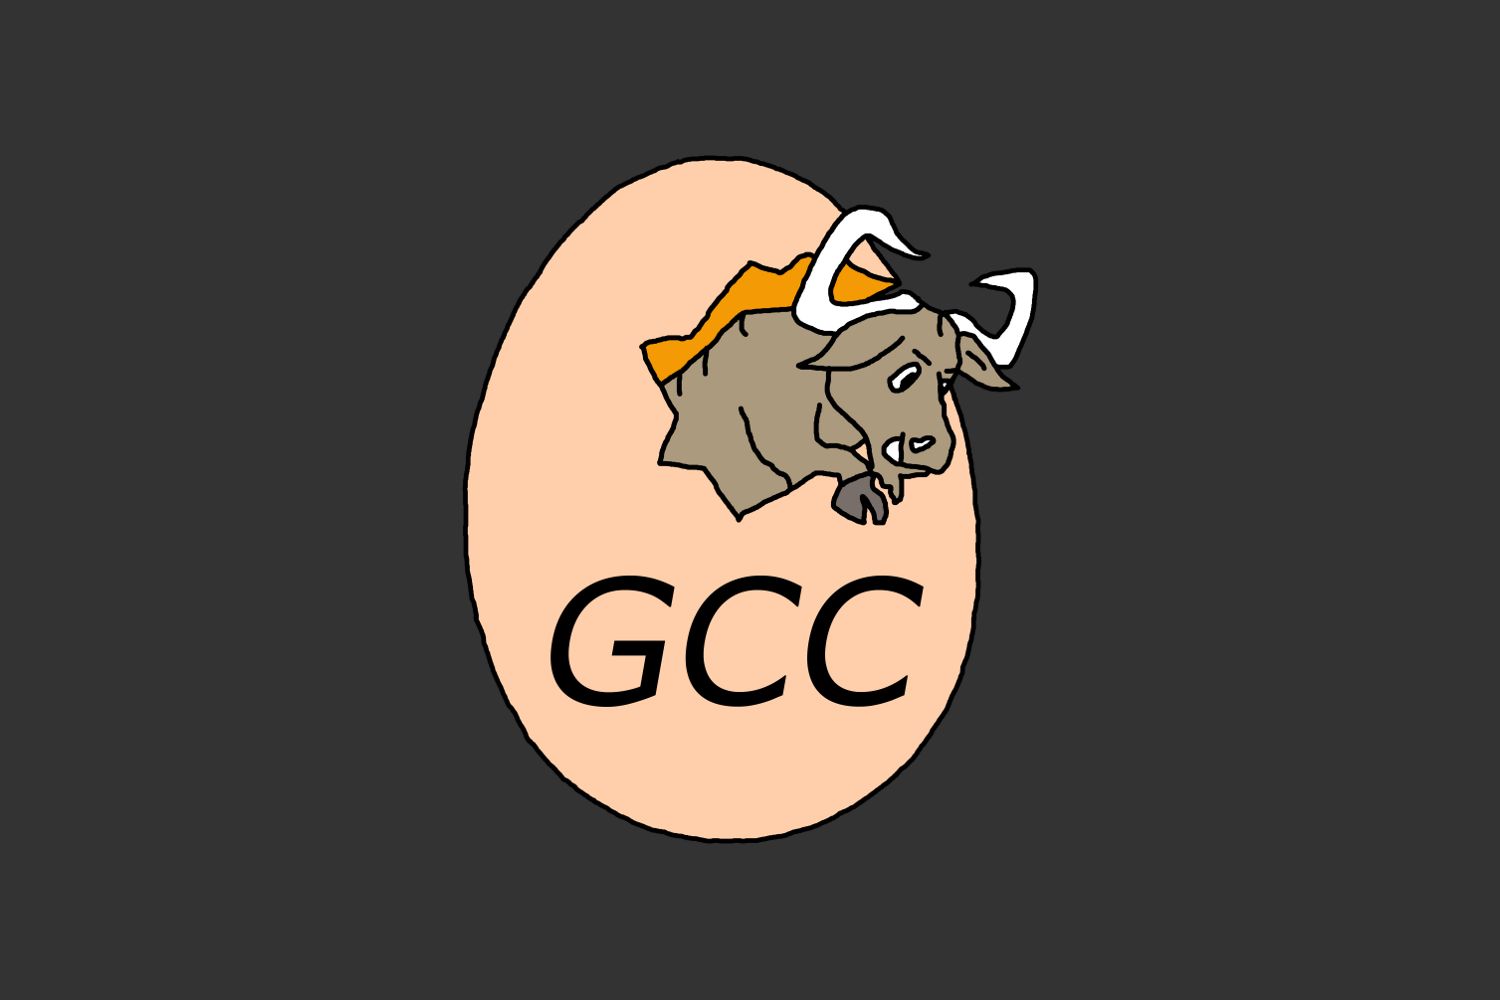 Gnu c compiler gcc. GNU Compiler collection. GCC. GCC логотип. GCC компилятор.